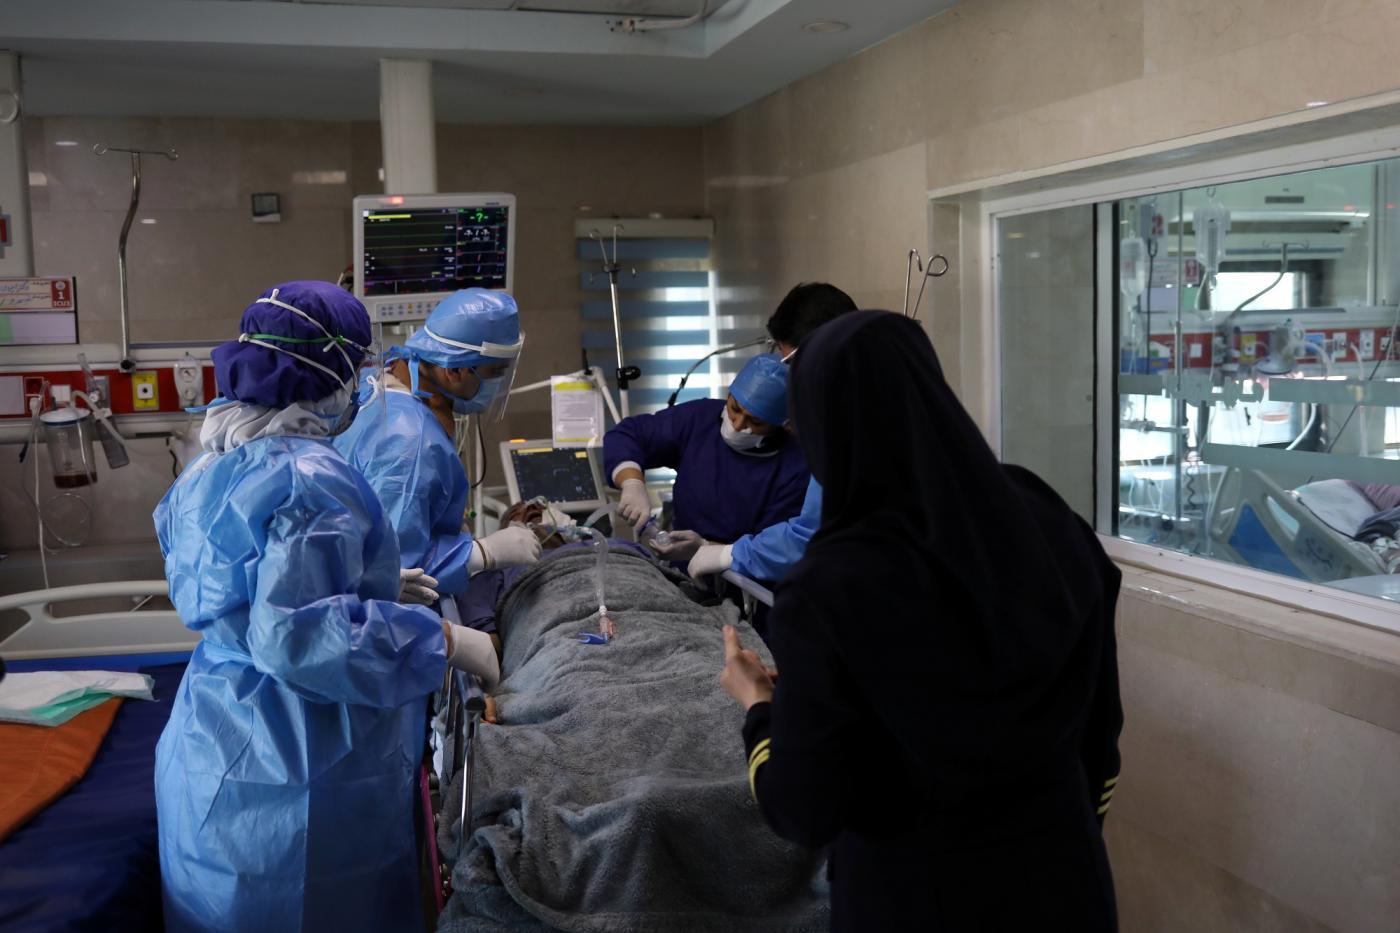 Des infirmières préparent un patient atteint du COVID-19 en vue de son transfert à l’hôpital Masih Daneshvari de Téhéran, le 30 mars (Reuters/West Asia News Agency)